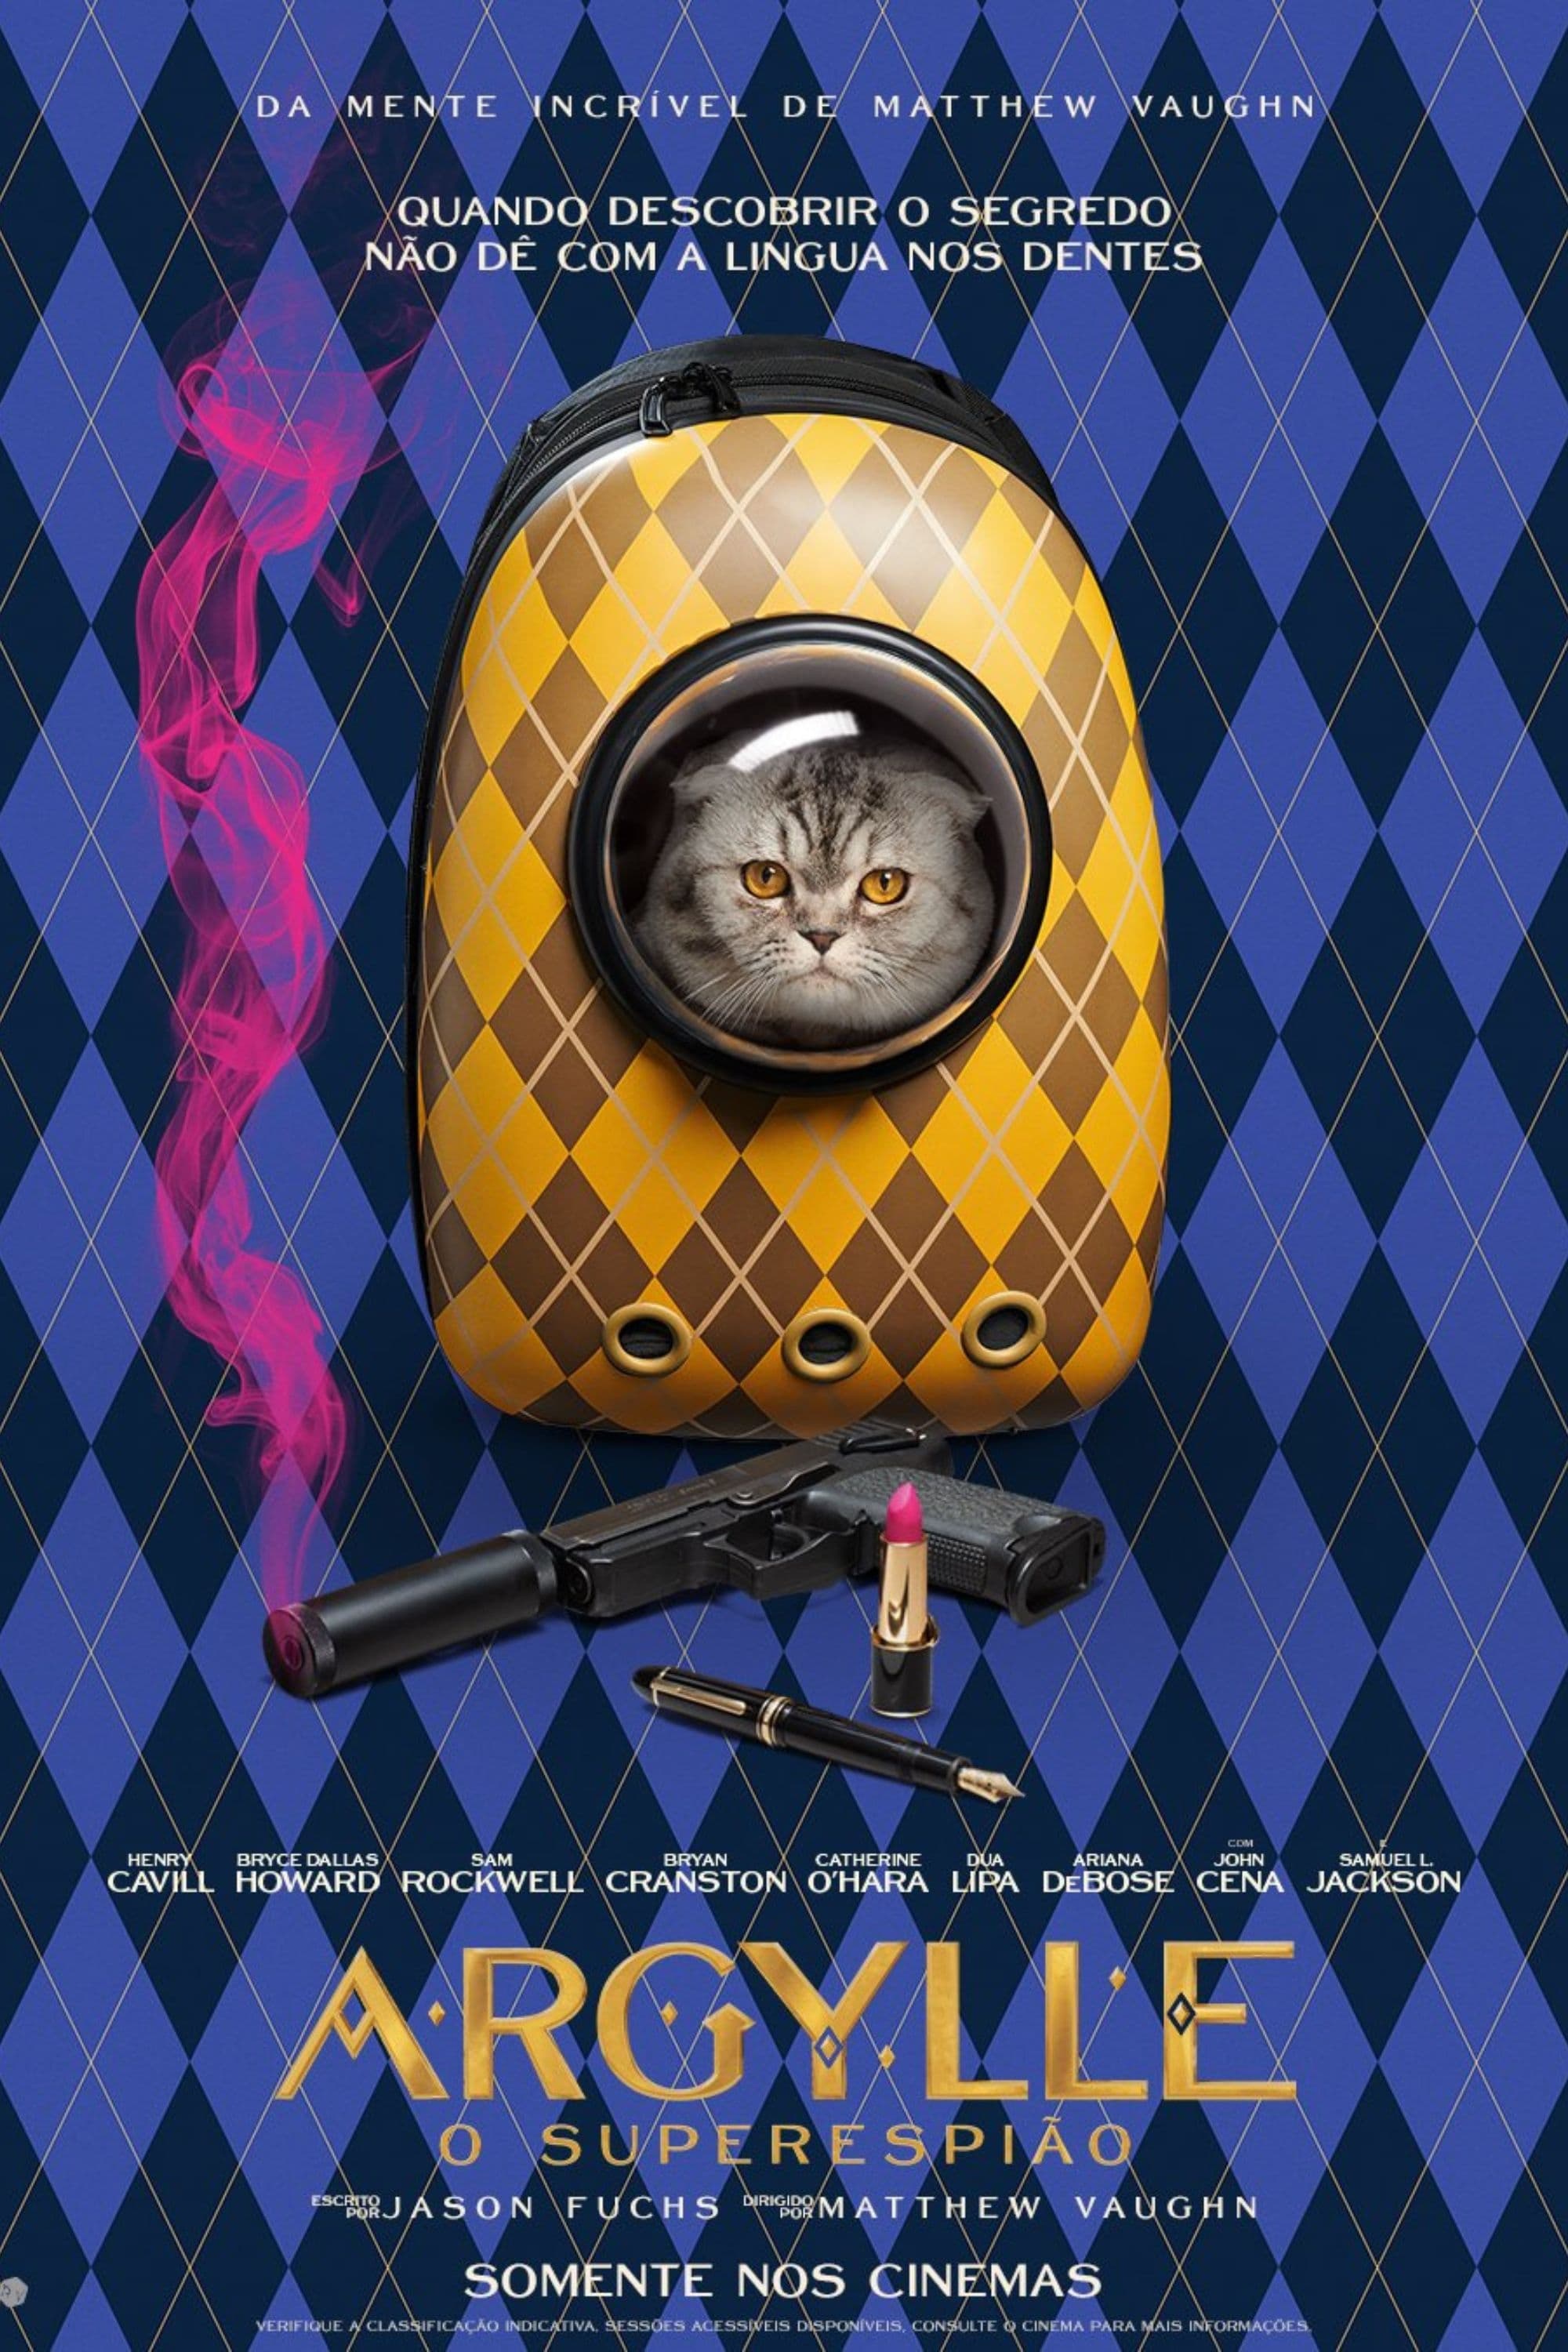 Imagem do Poster do filme 'Argylle: O Superespião (Argylle)'